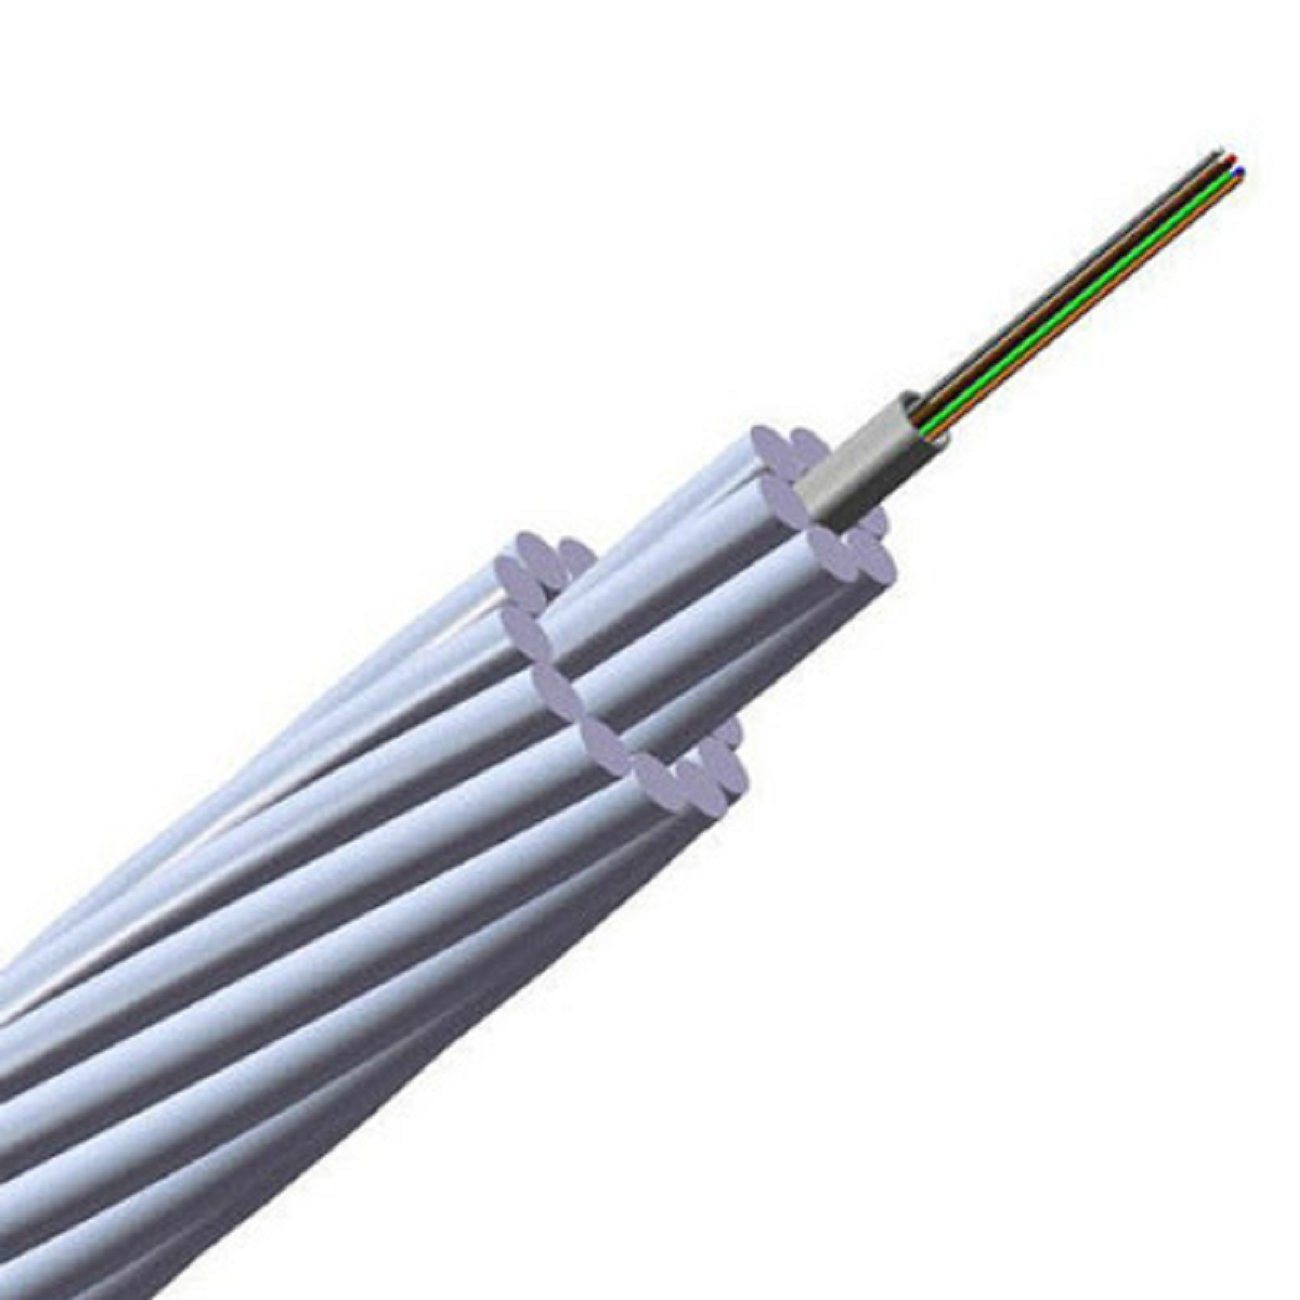 
                24b1 Opgw de compuestos de fibra óptica cables OPGW de tierra
            